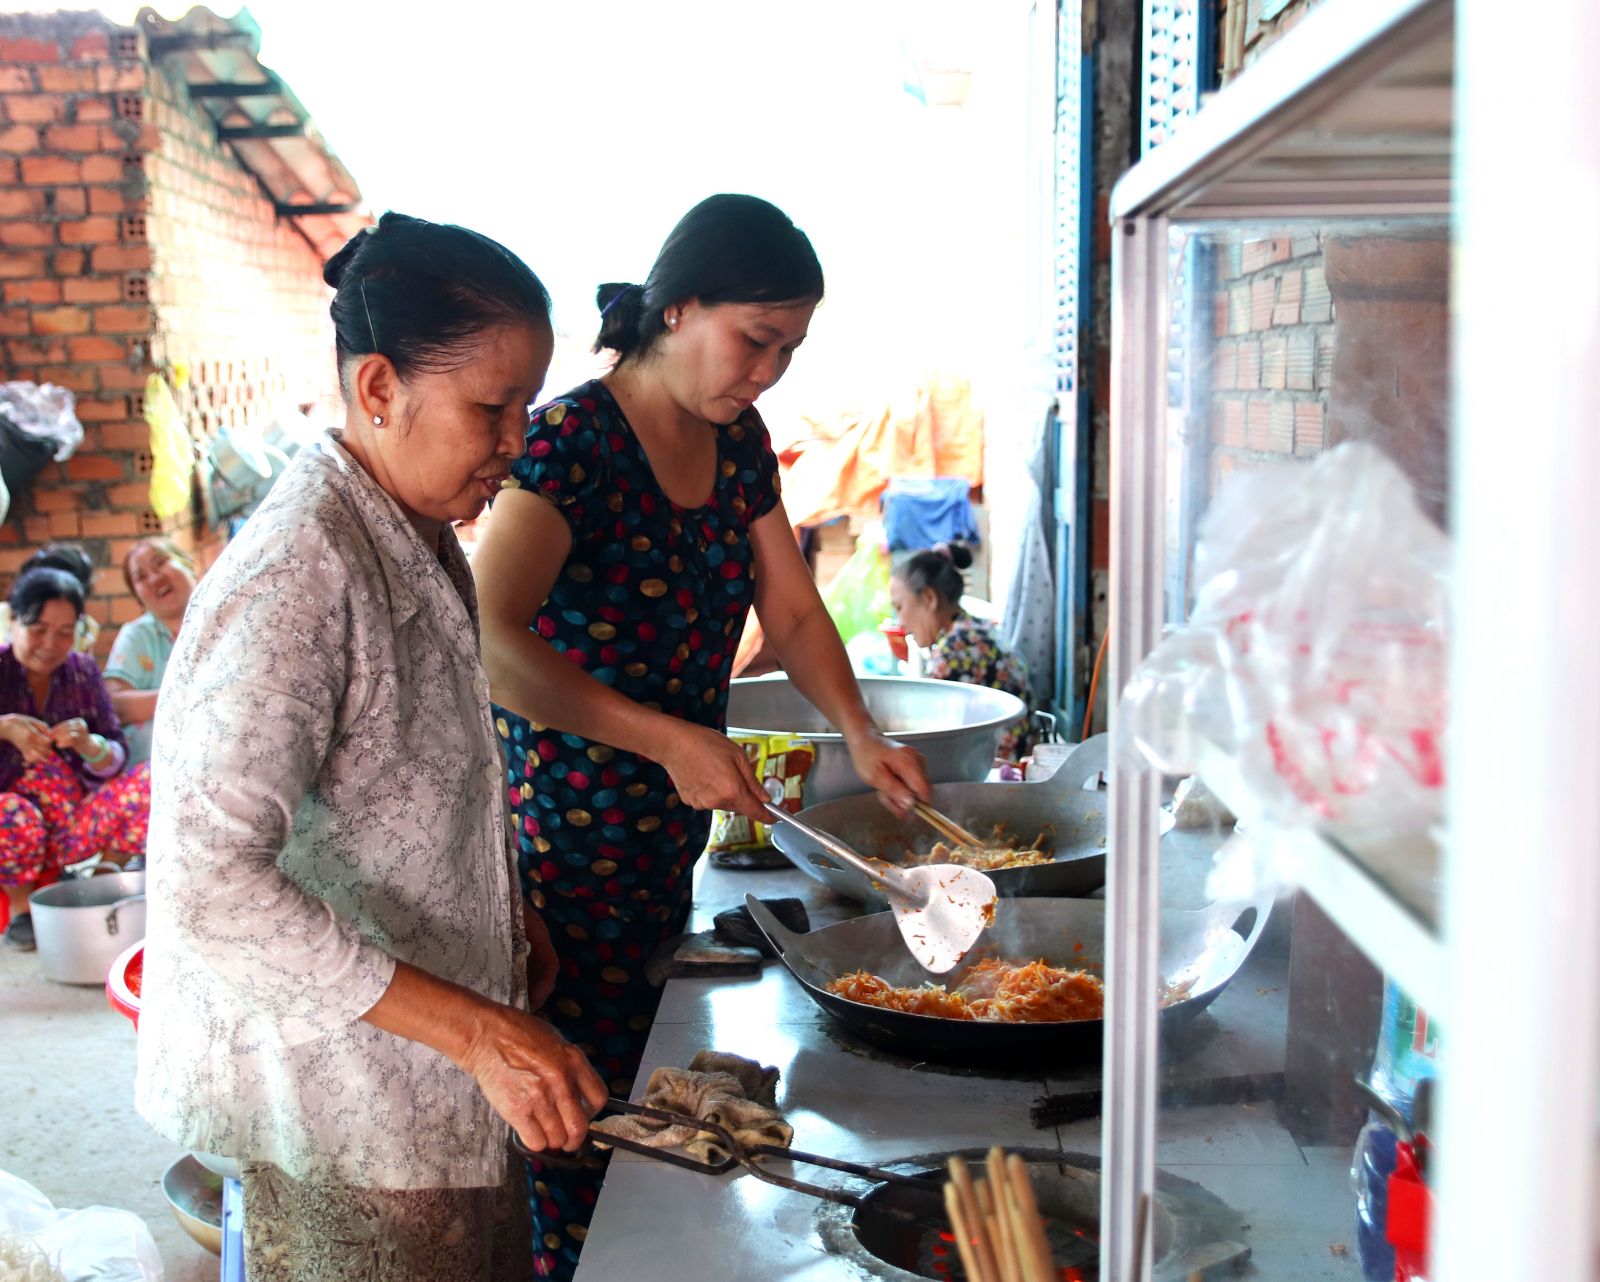 Ngoài việc nội trợ, giờ đây, niềm vui của bà Trần Thị Gạo (70 tuổi), ngụ ấp 1, xã Bình Tâm, là hàng tháng được quây quần cùng chị em chuẩn bị những suất ăn sáng miễn phí